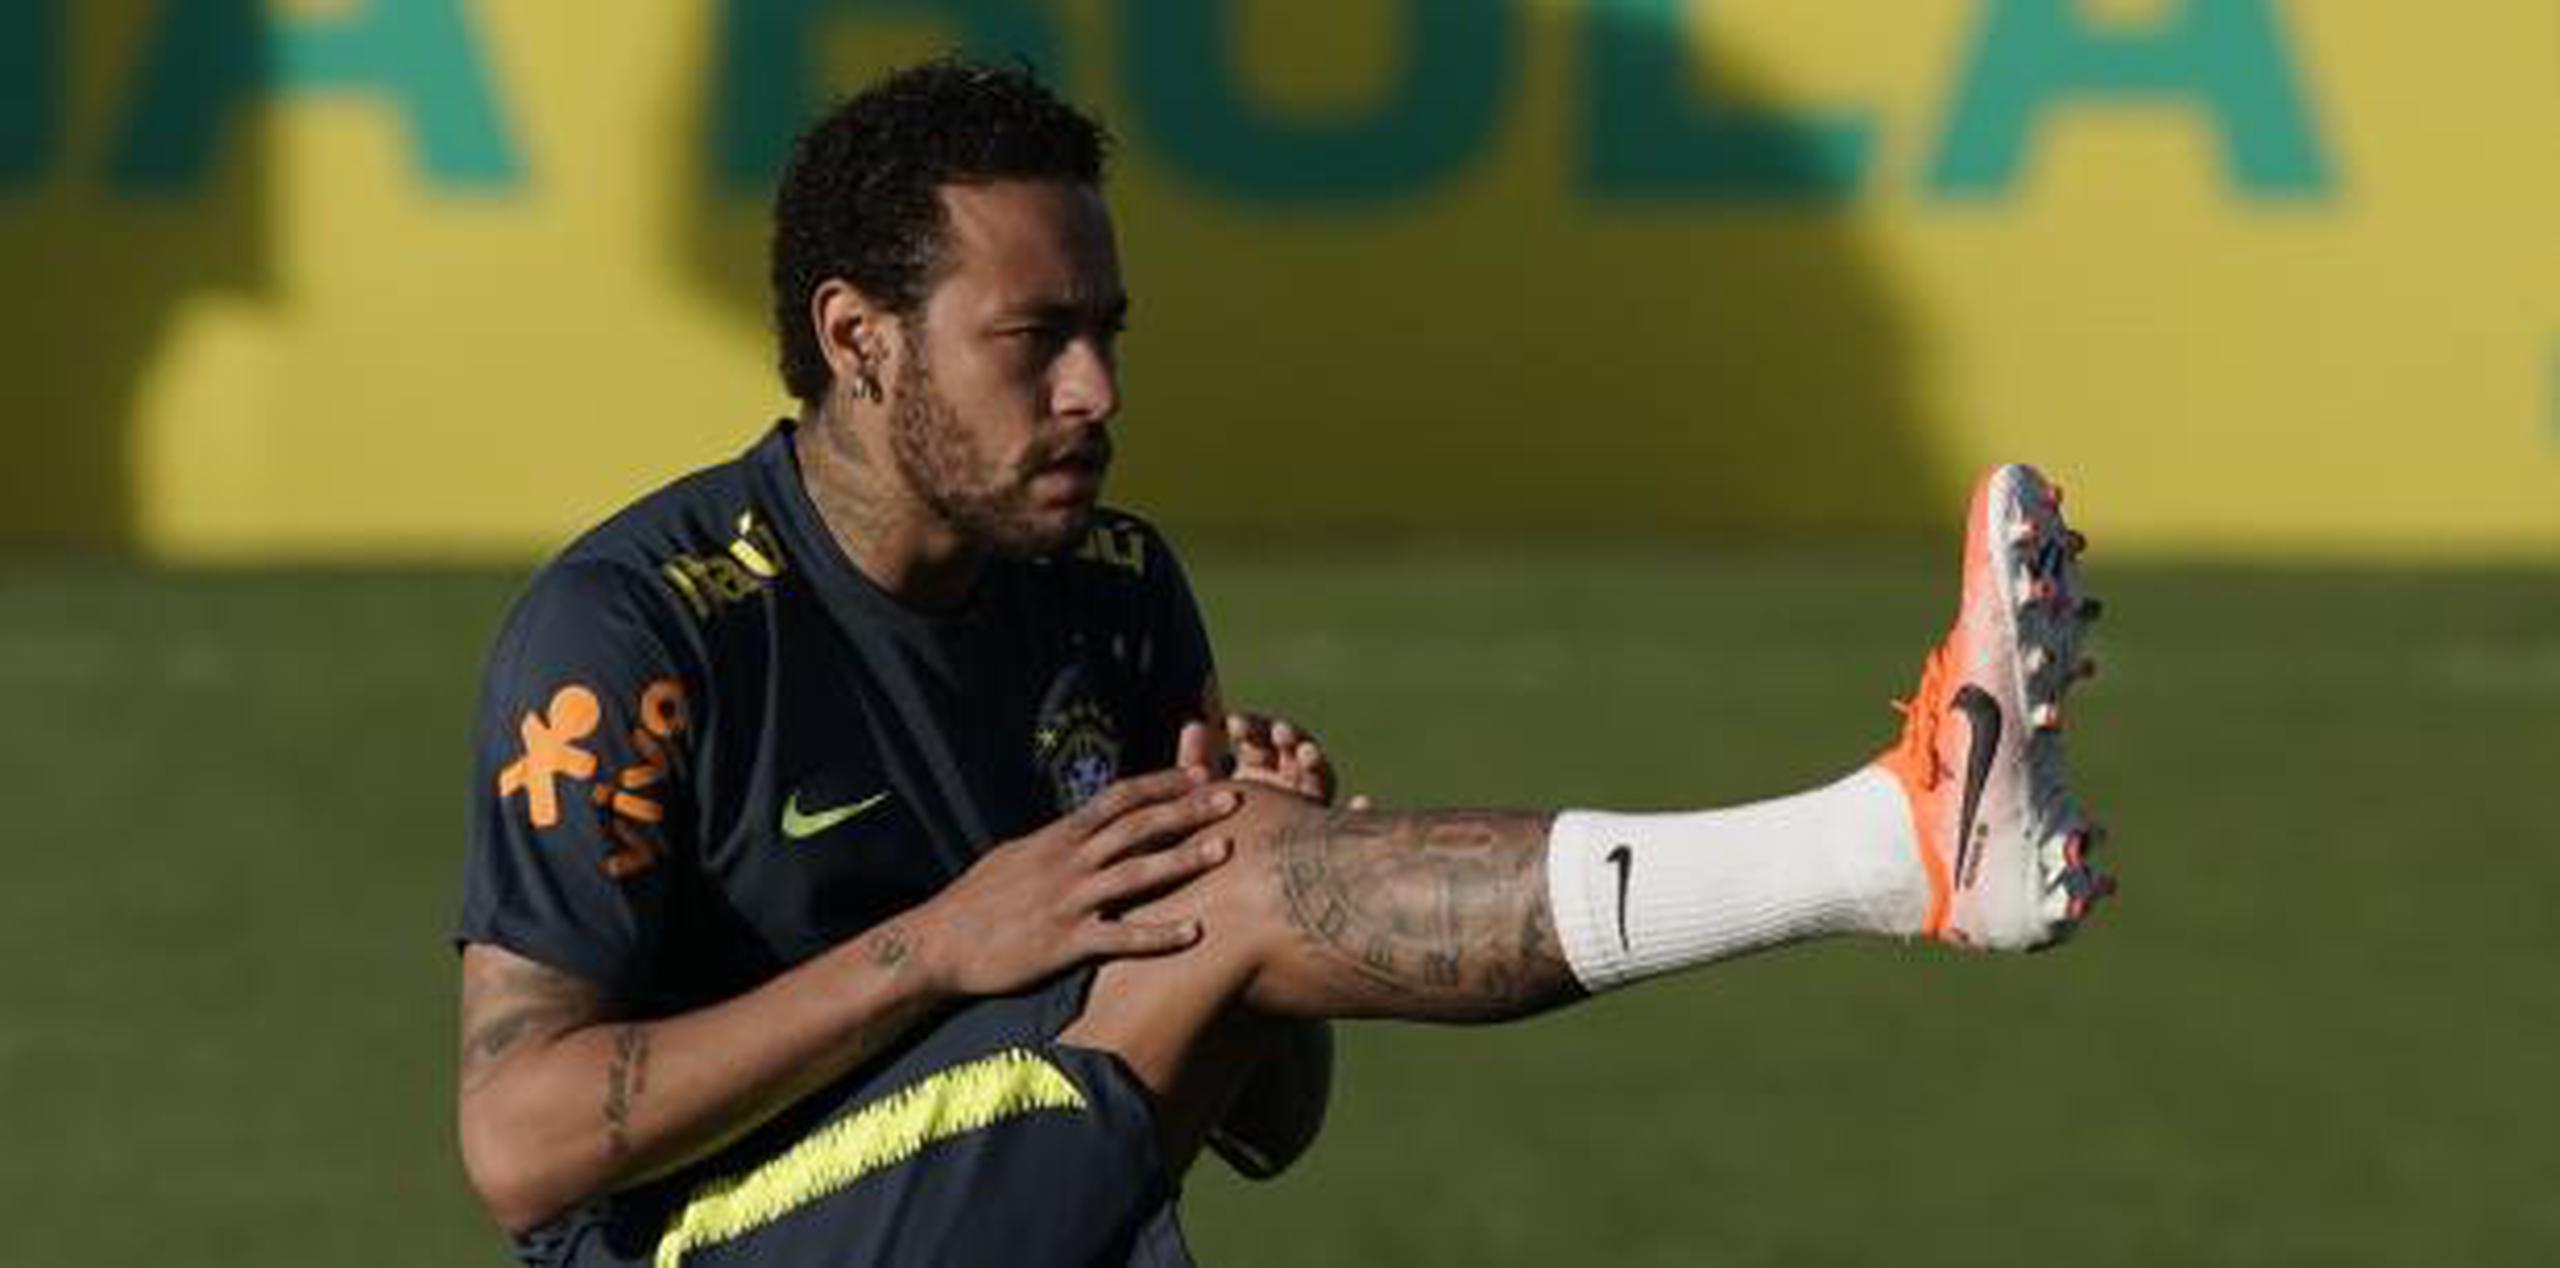 La adoración a Neymar en Brasil se ha deteriorado debido a razones políticas, como su apoyo al presidente ultraderechista Jair Bolsonaro. (AP / Leo Correa)